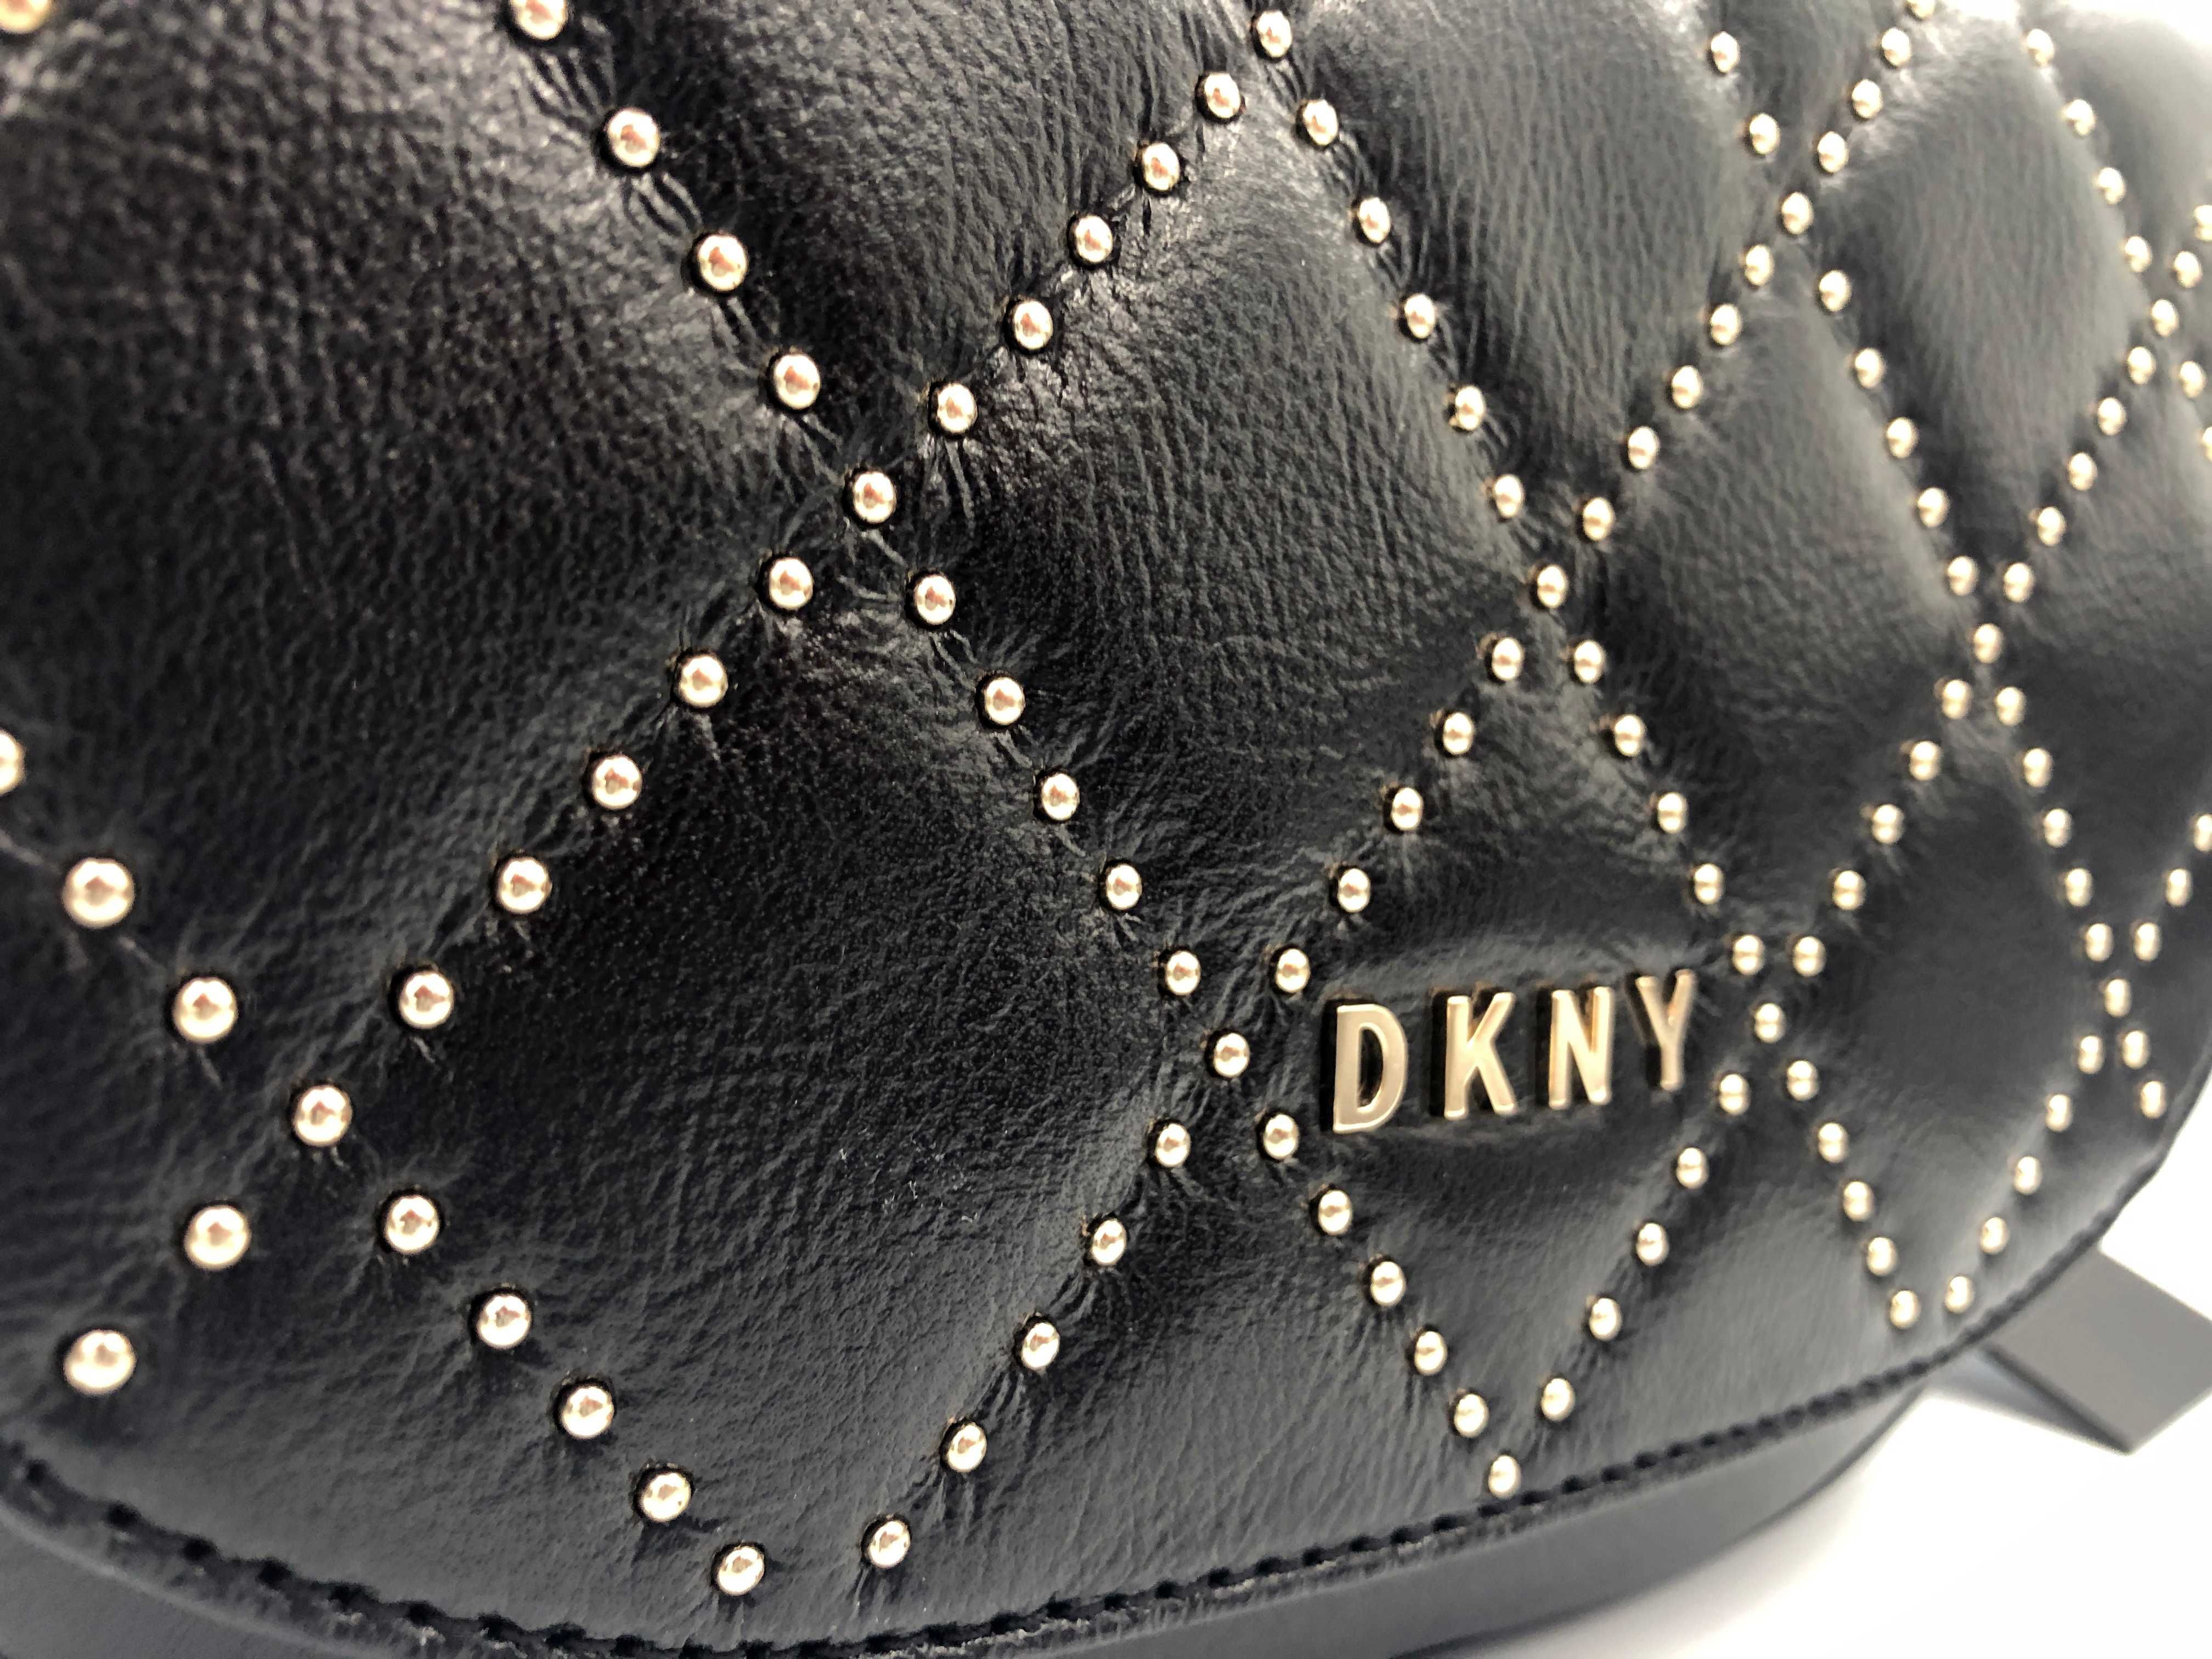 Torebka DKNY, Donna Karan - Saddle bag - nowa